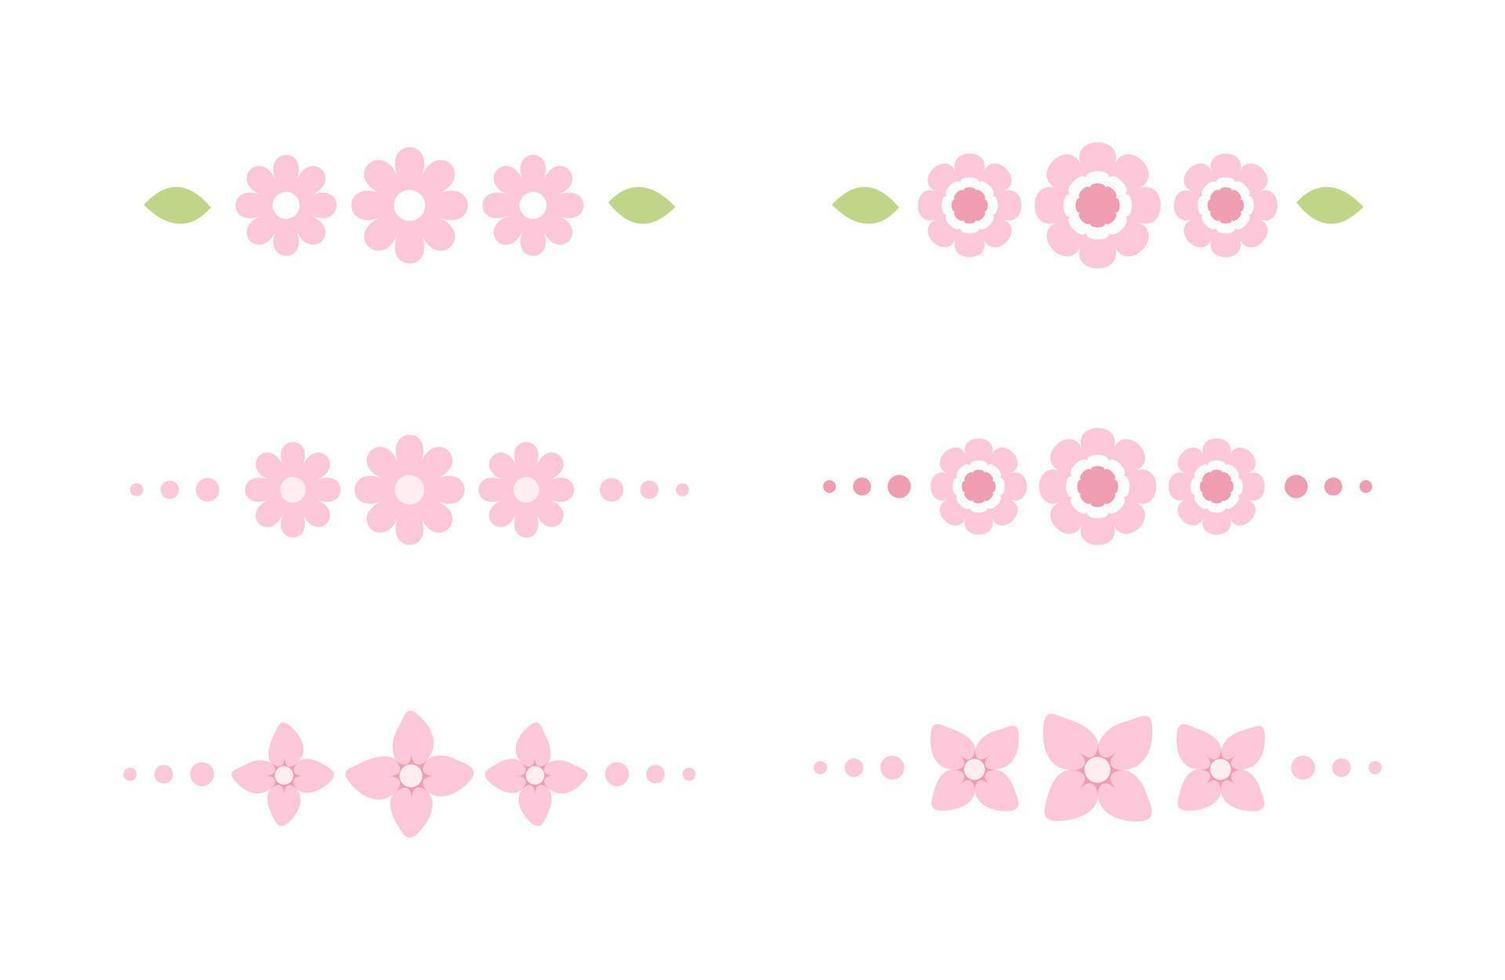 Cute pink floral divider border line illustration collection set vector